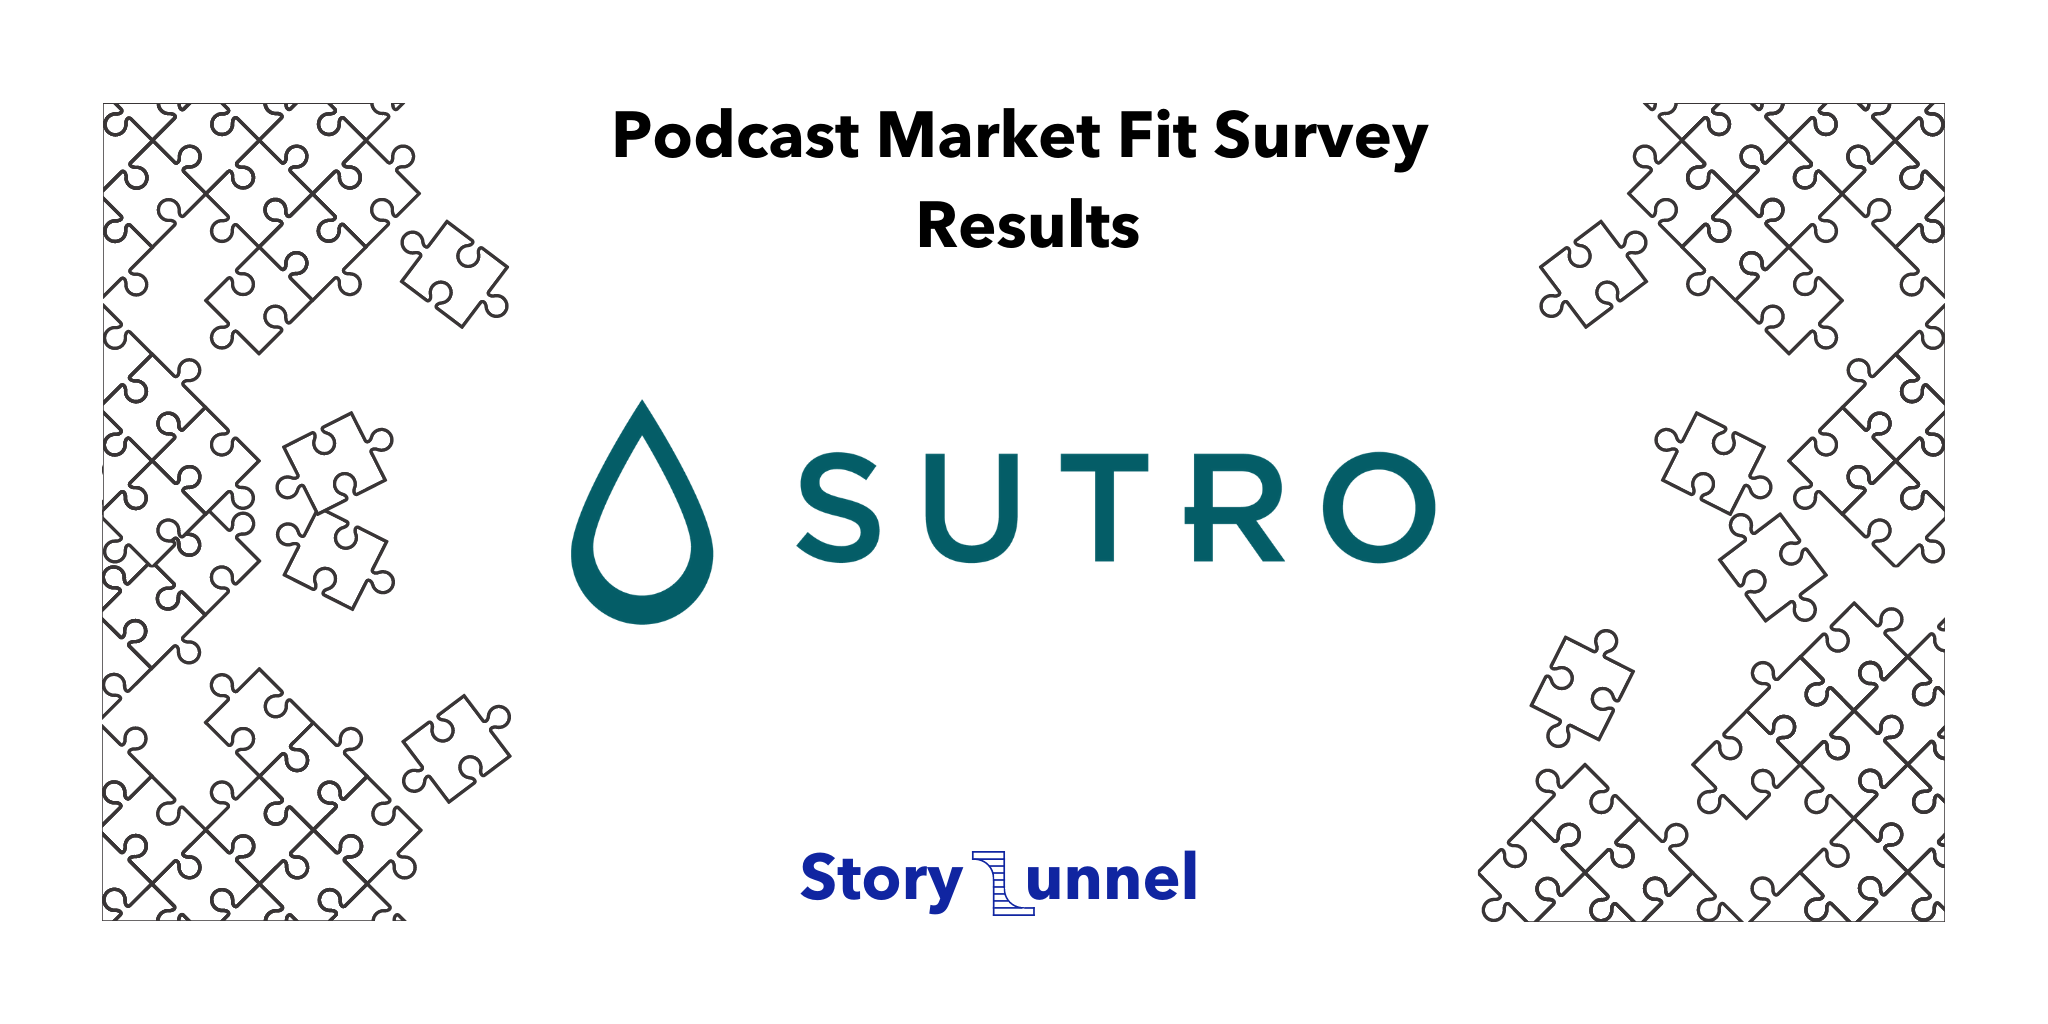 Sutro Connect Product Market Fit Survey